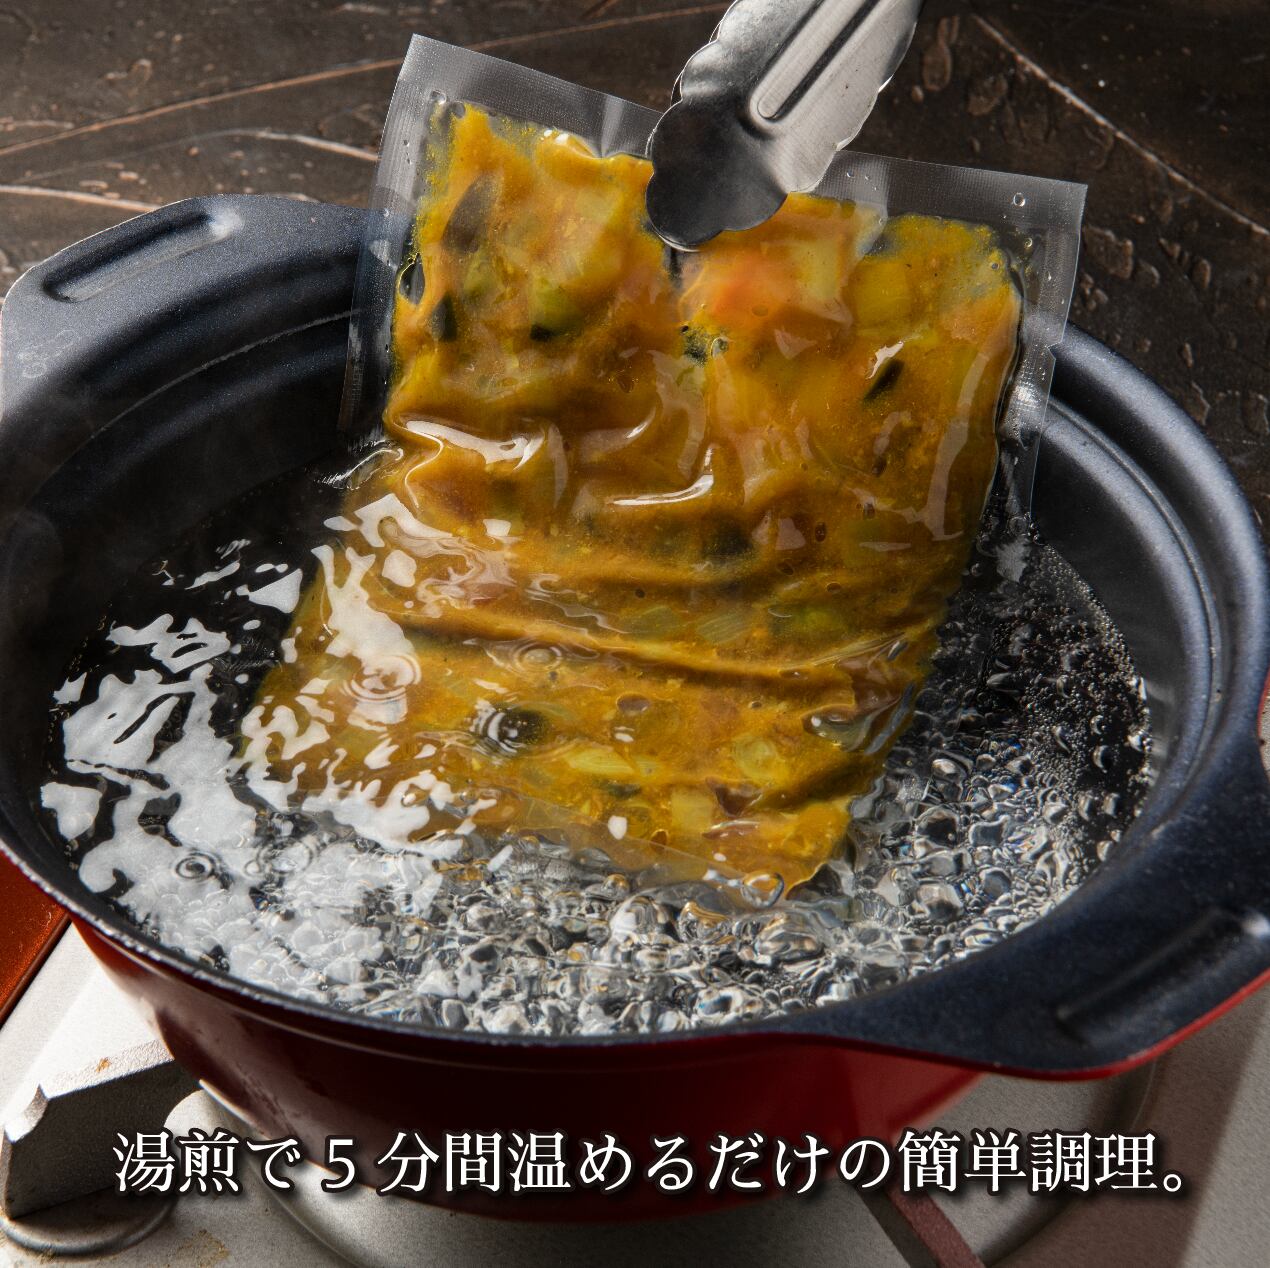 【鹿肉飯】鹿カレー丼の具 × 5食セット